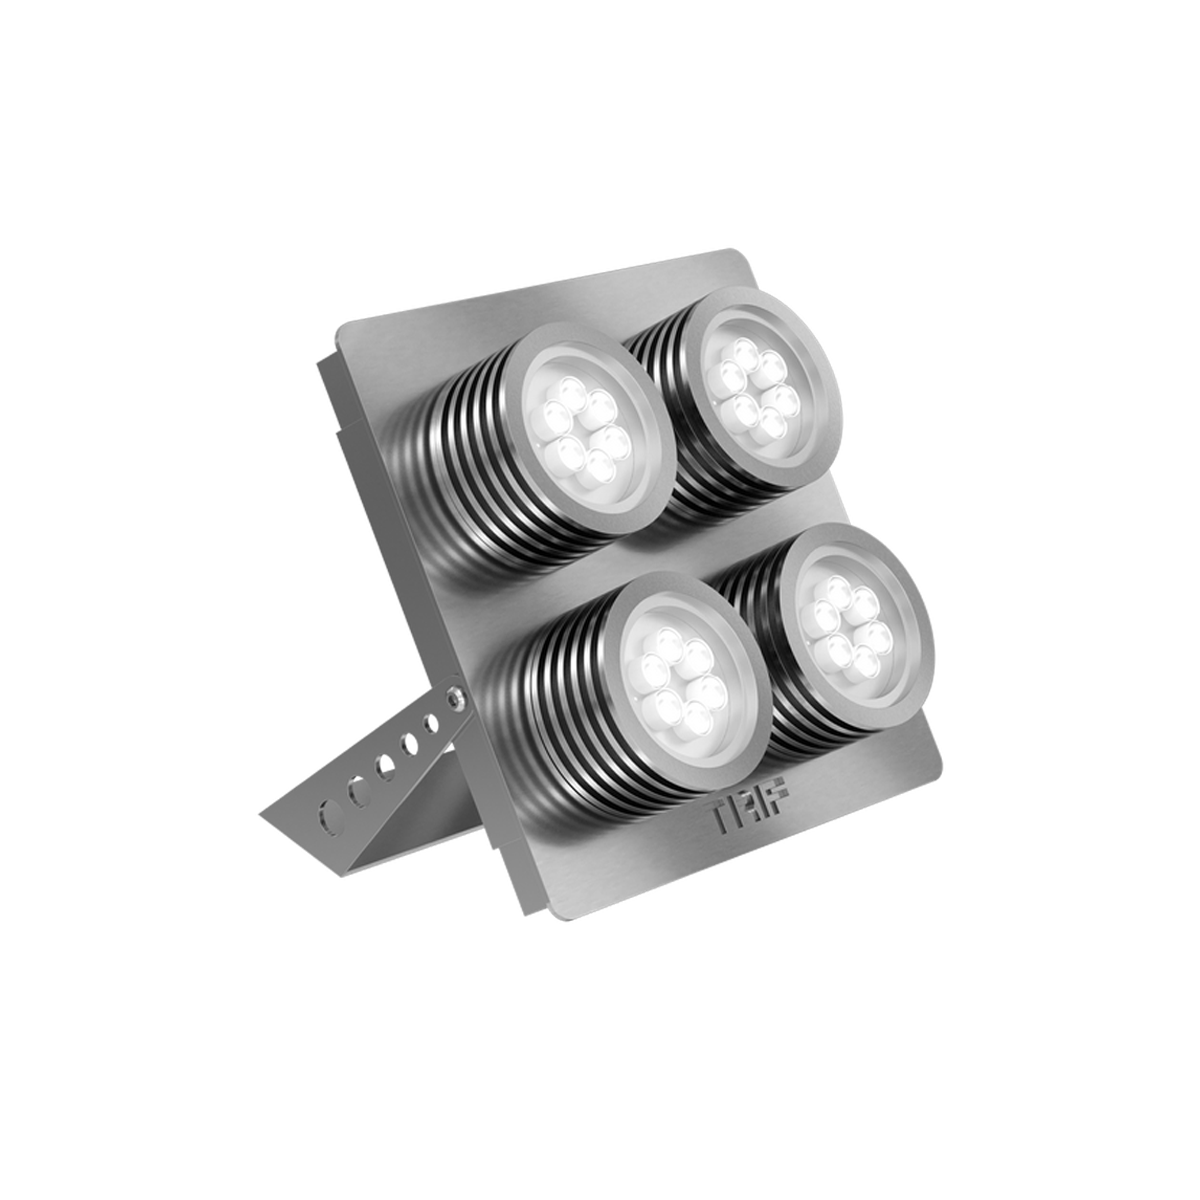 TRIF FOCUS серия ландшафтных светодиодных прожекторов